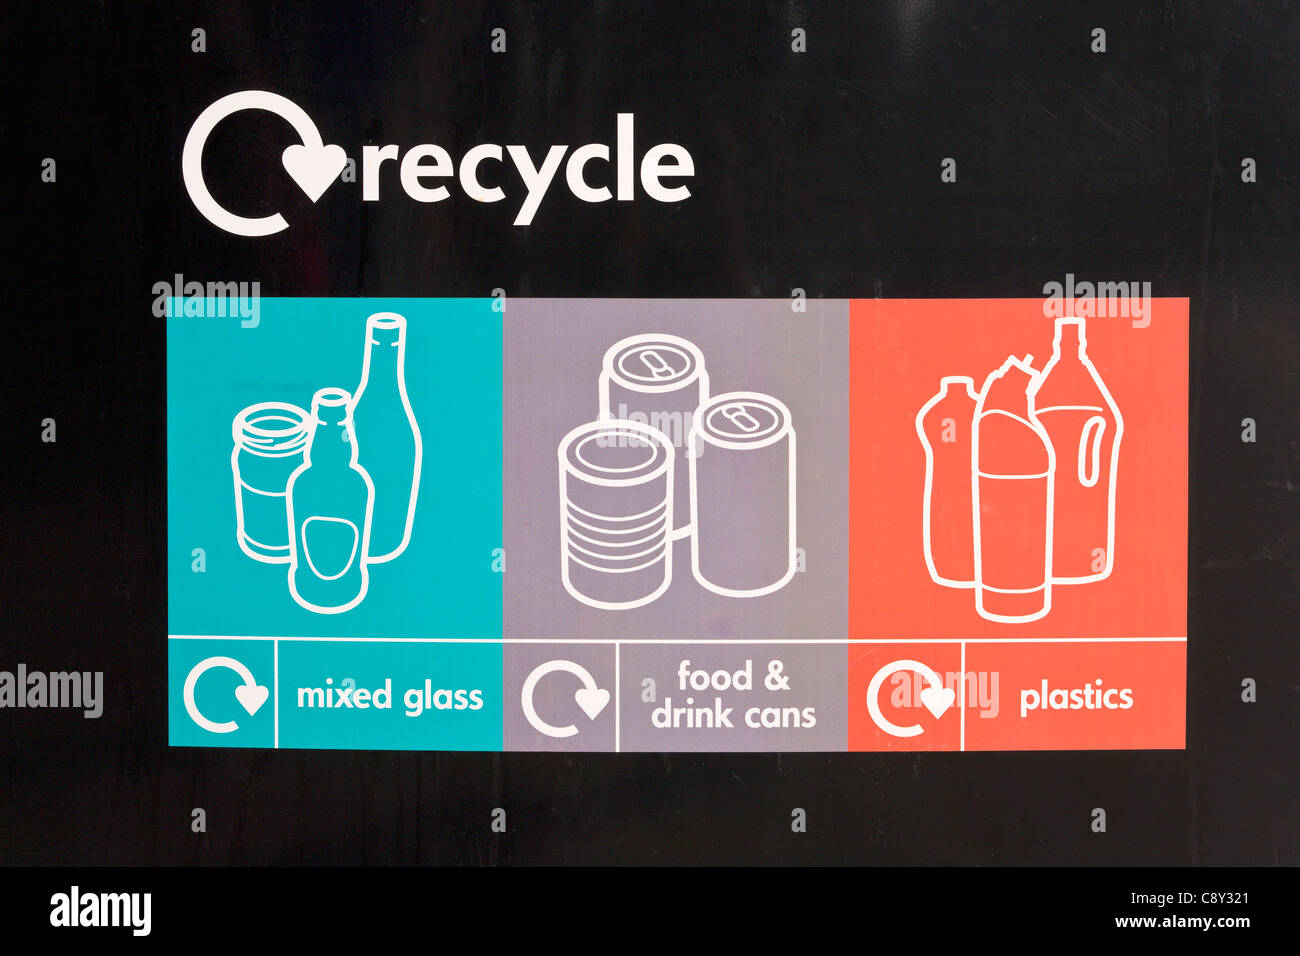 Aviso sobre reciclaje de vidrio mixto, la comida y la bebida, latas y plásticos Foto de stock